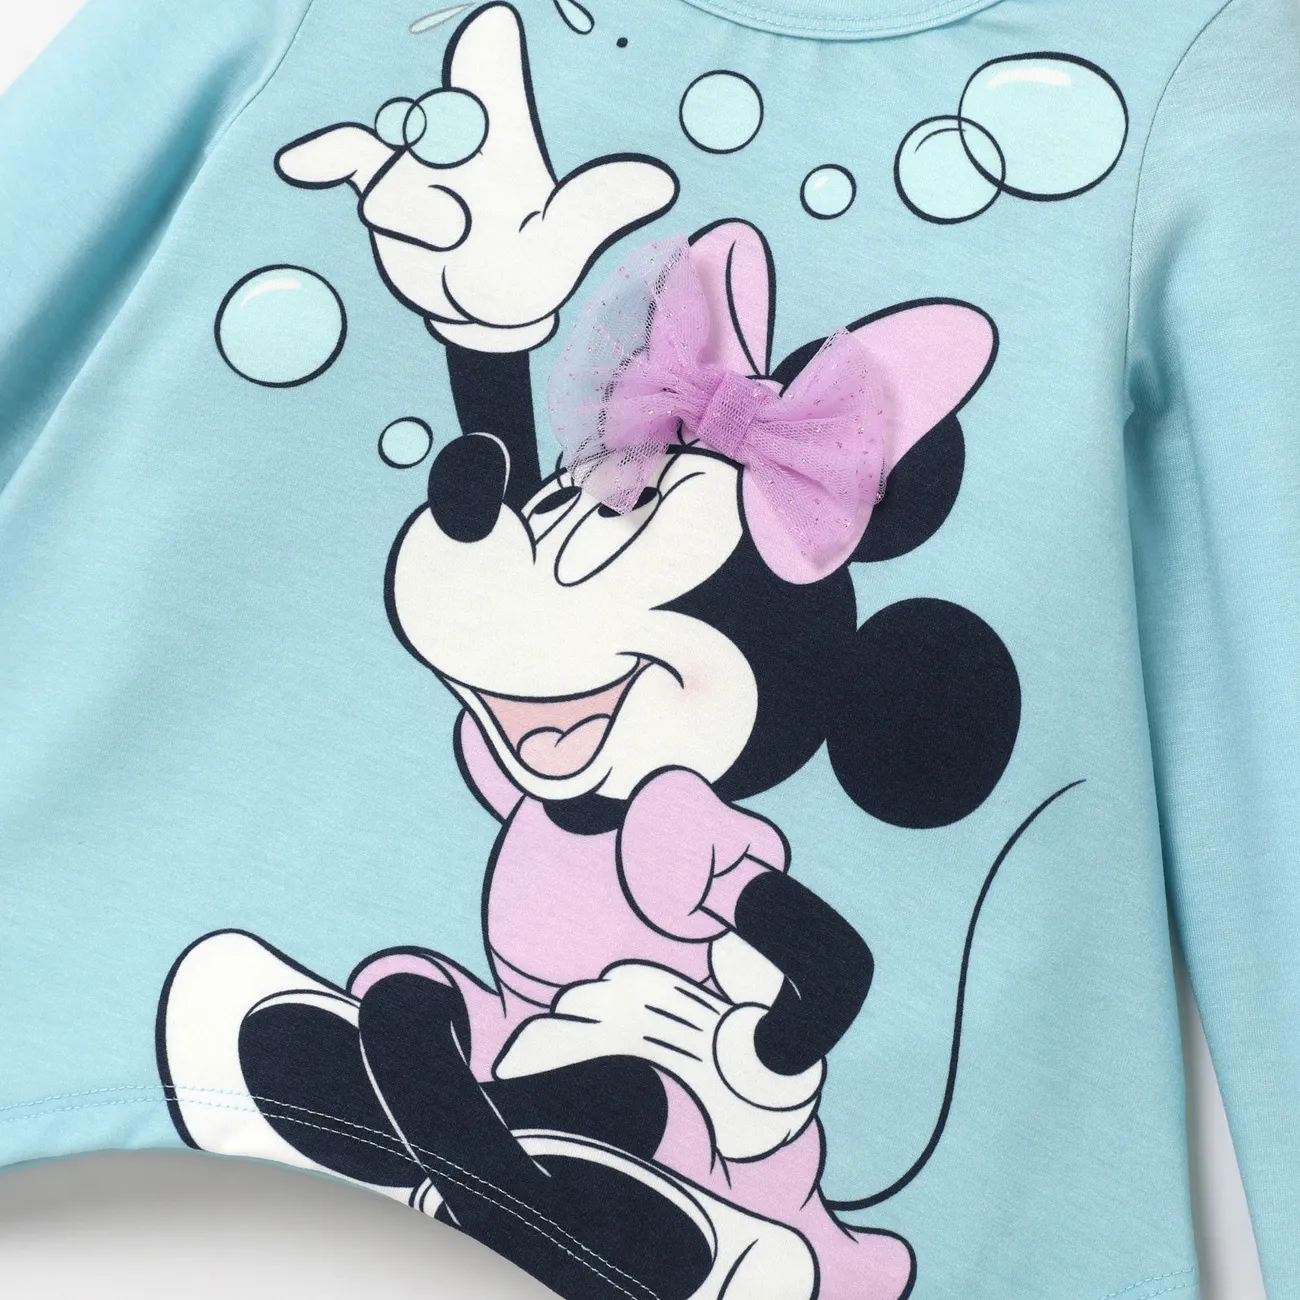 Disney Mickey and Friends 2 unidades Criança Menina Hipertátil/3D Infantil conjuntos de camisetas água big image 1